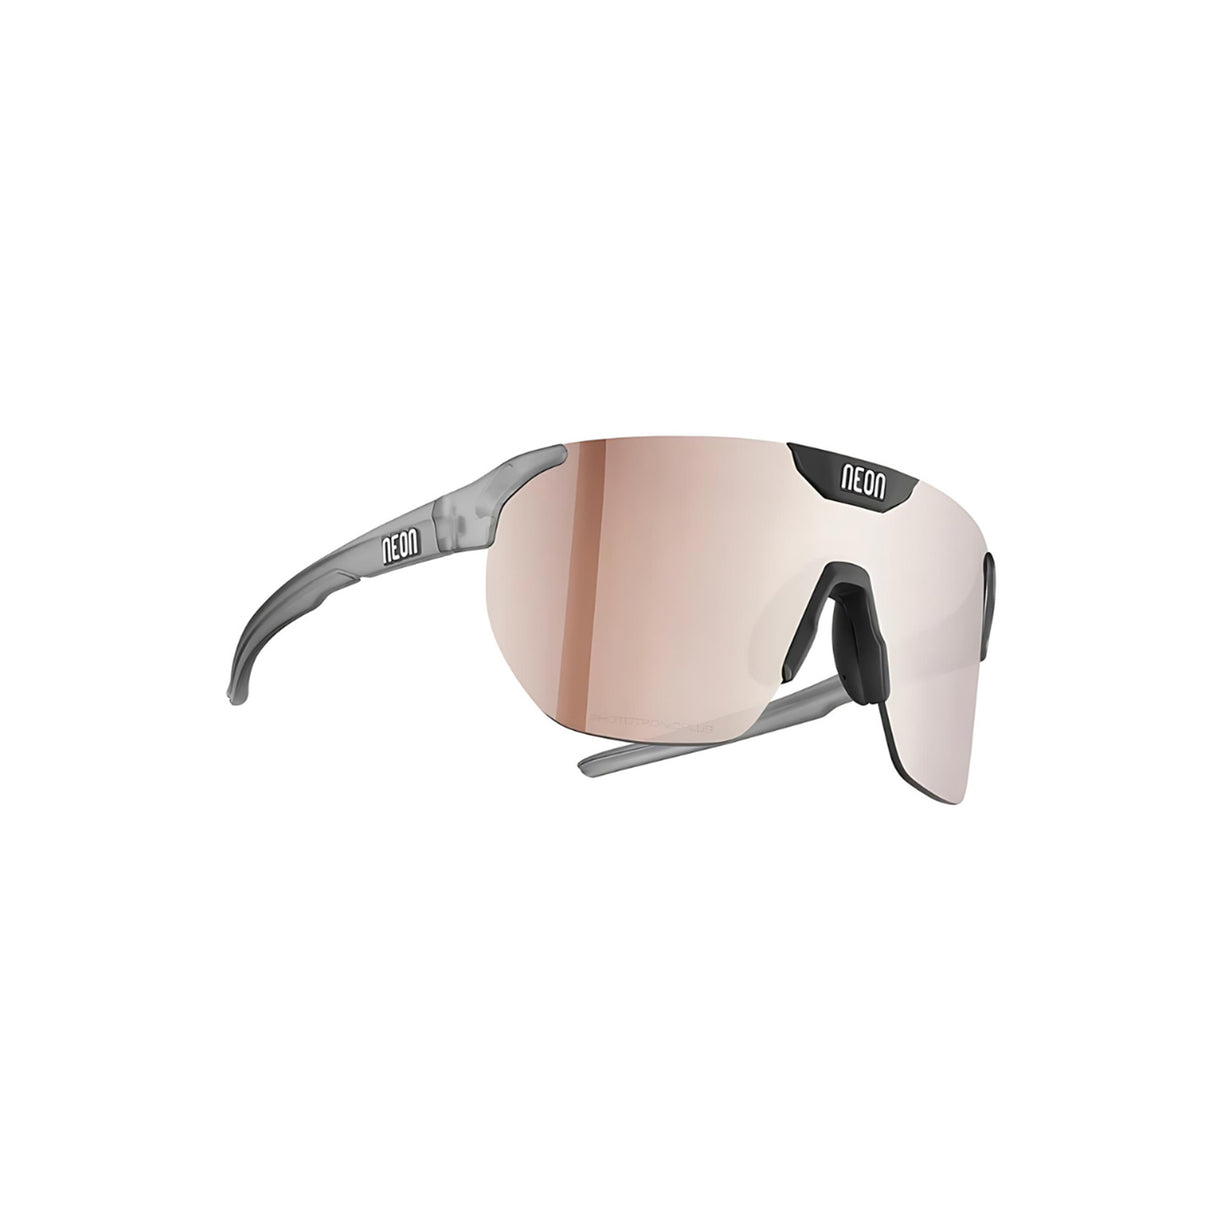 Neon CORE Sunglasses - Photochromic Silver